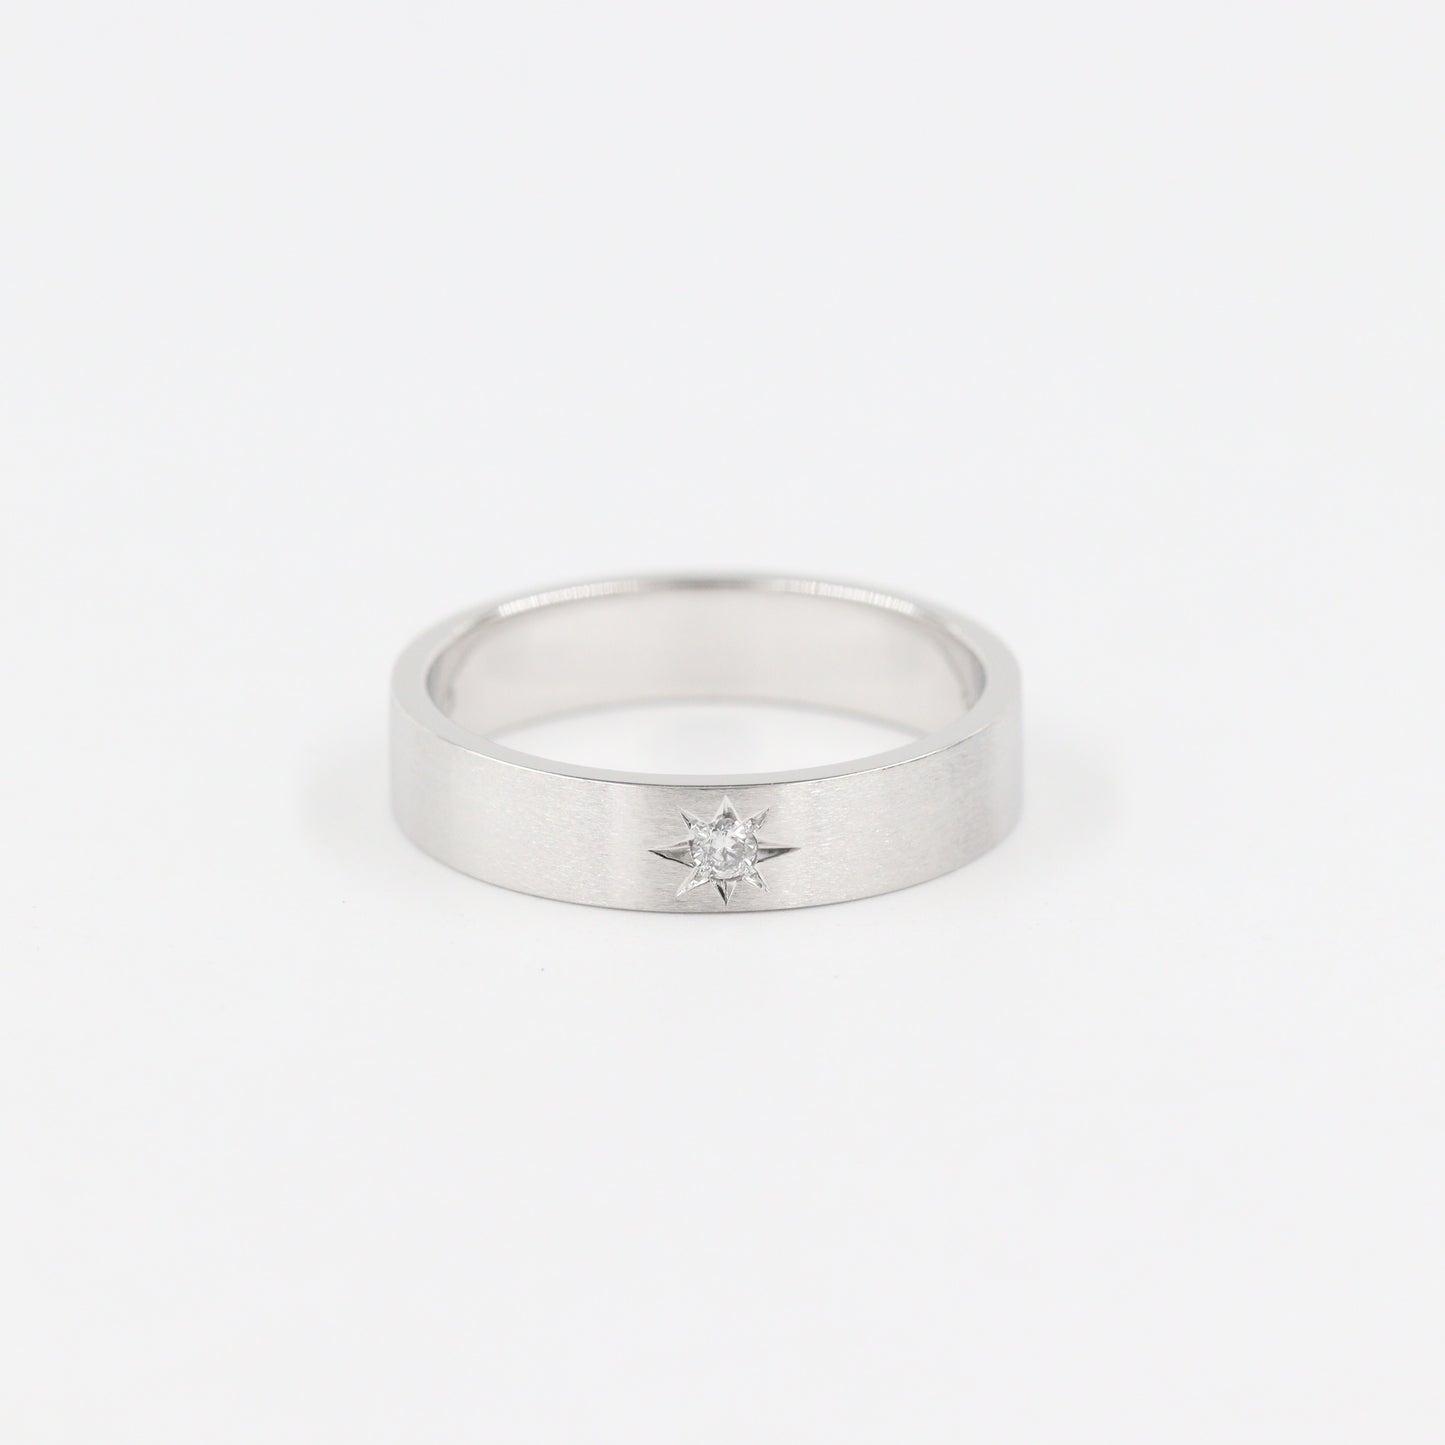 Polaris Star Diamond Ring/ 1 Star Diamond Ring/ 1 Star Diamond Wedding Ring/ 14K Star Flat Ring/ 14K Polaris Ring/ Width 4.5mm